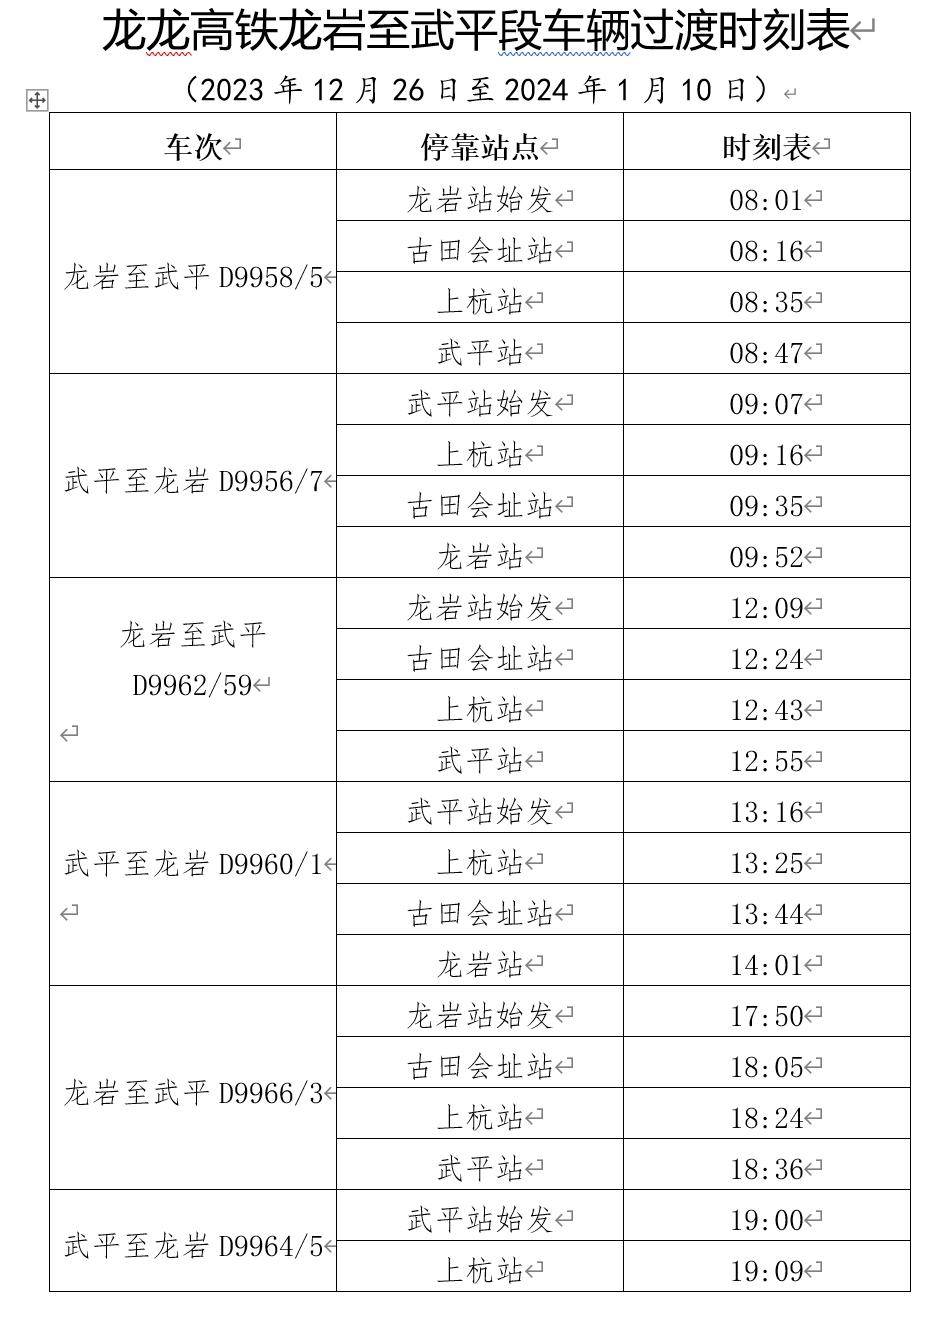 备注:根据南昌铁路局安排,龙龙高铁龙武段12月26日至2024年1月10日